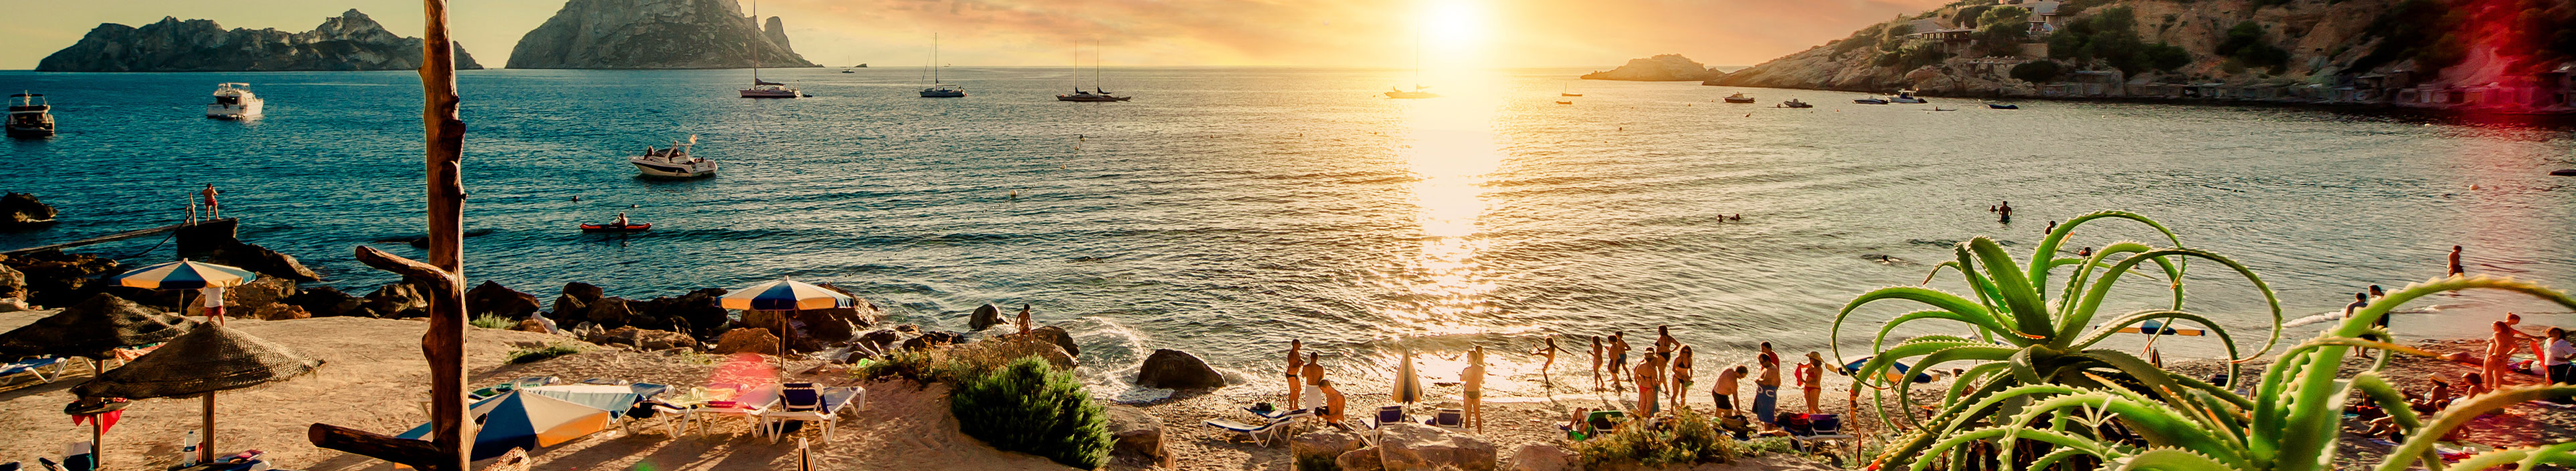 Ibiza Urlaub. Blick aufs Meer mit schönem Sonnenuntergang.